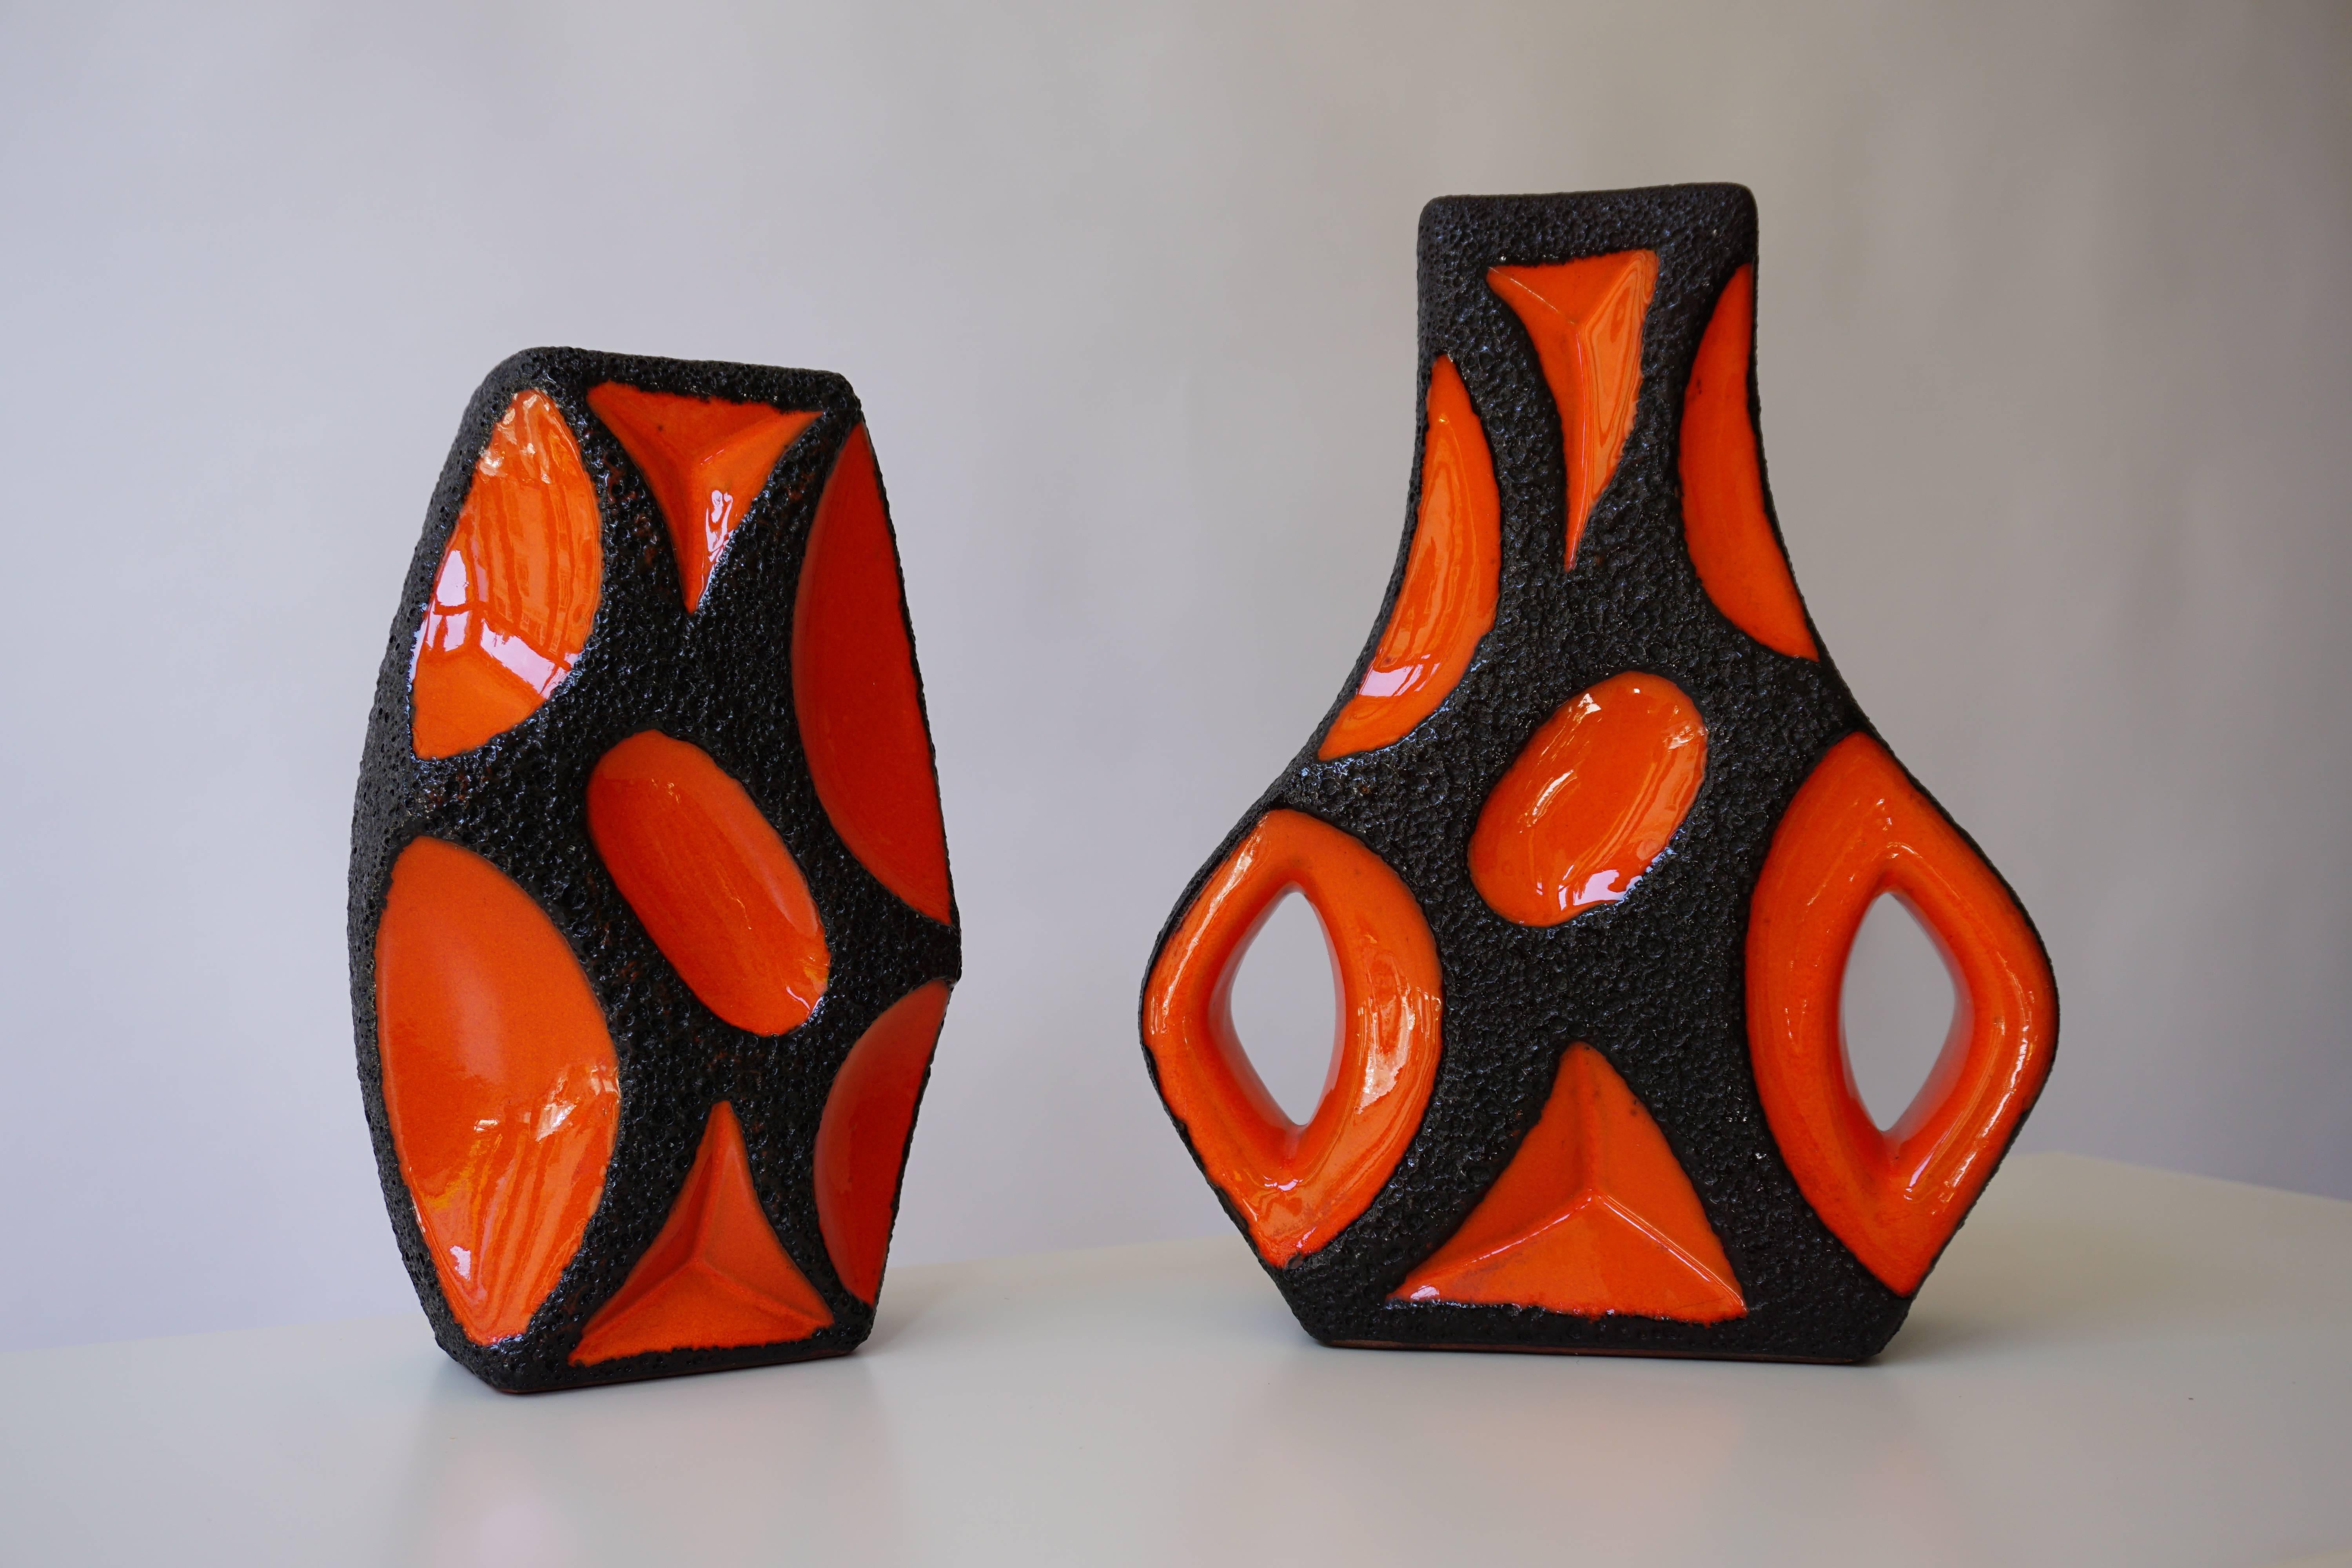 Zwei Vasen aus westdeutscher Roth Keramik mit orangefarbener Glasur; Gitarrenvase mit quadratischer Öffnung über einem bauchigen Körper, alles in einer dicken Lavaglasur mit orangefarbenen Glasurreserven.
Maße: Höhe 31 cm und 27 cm.
Breite 25 cm